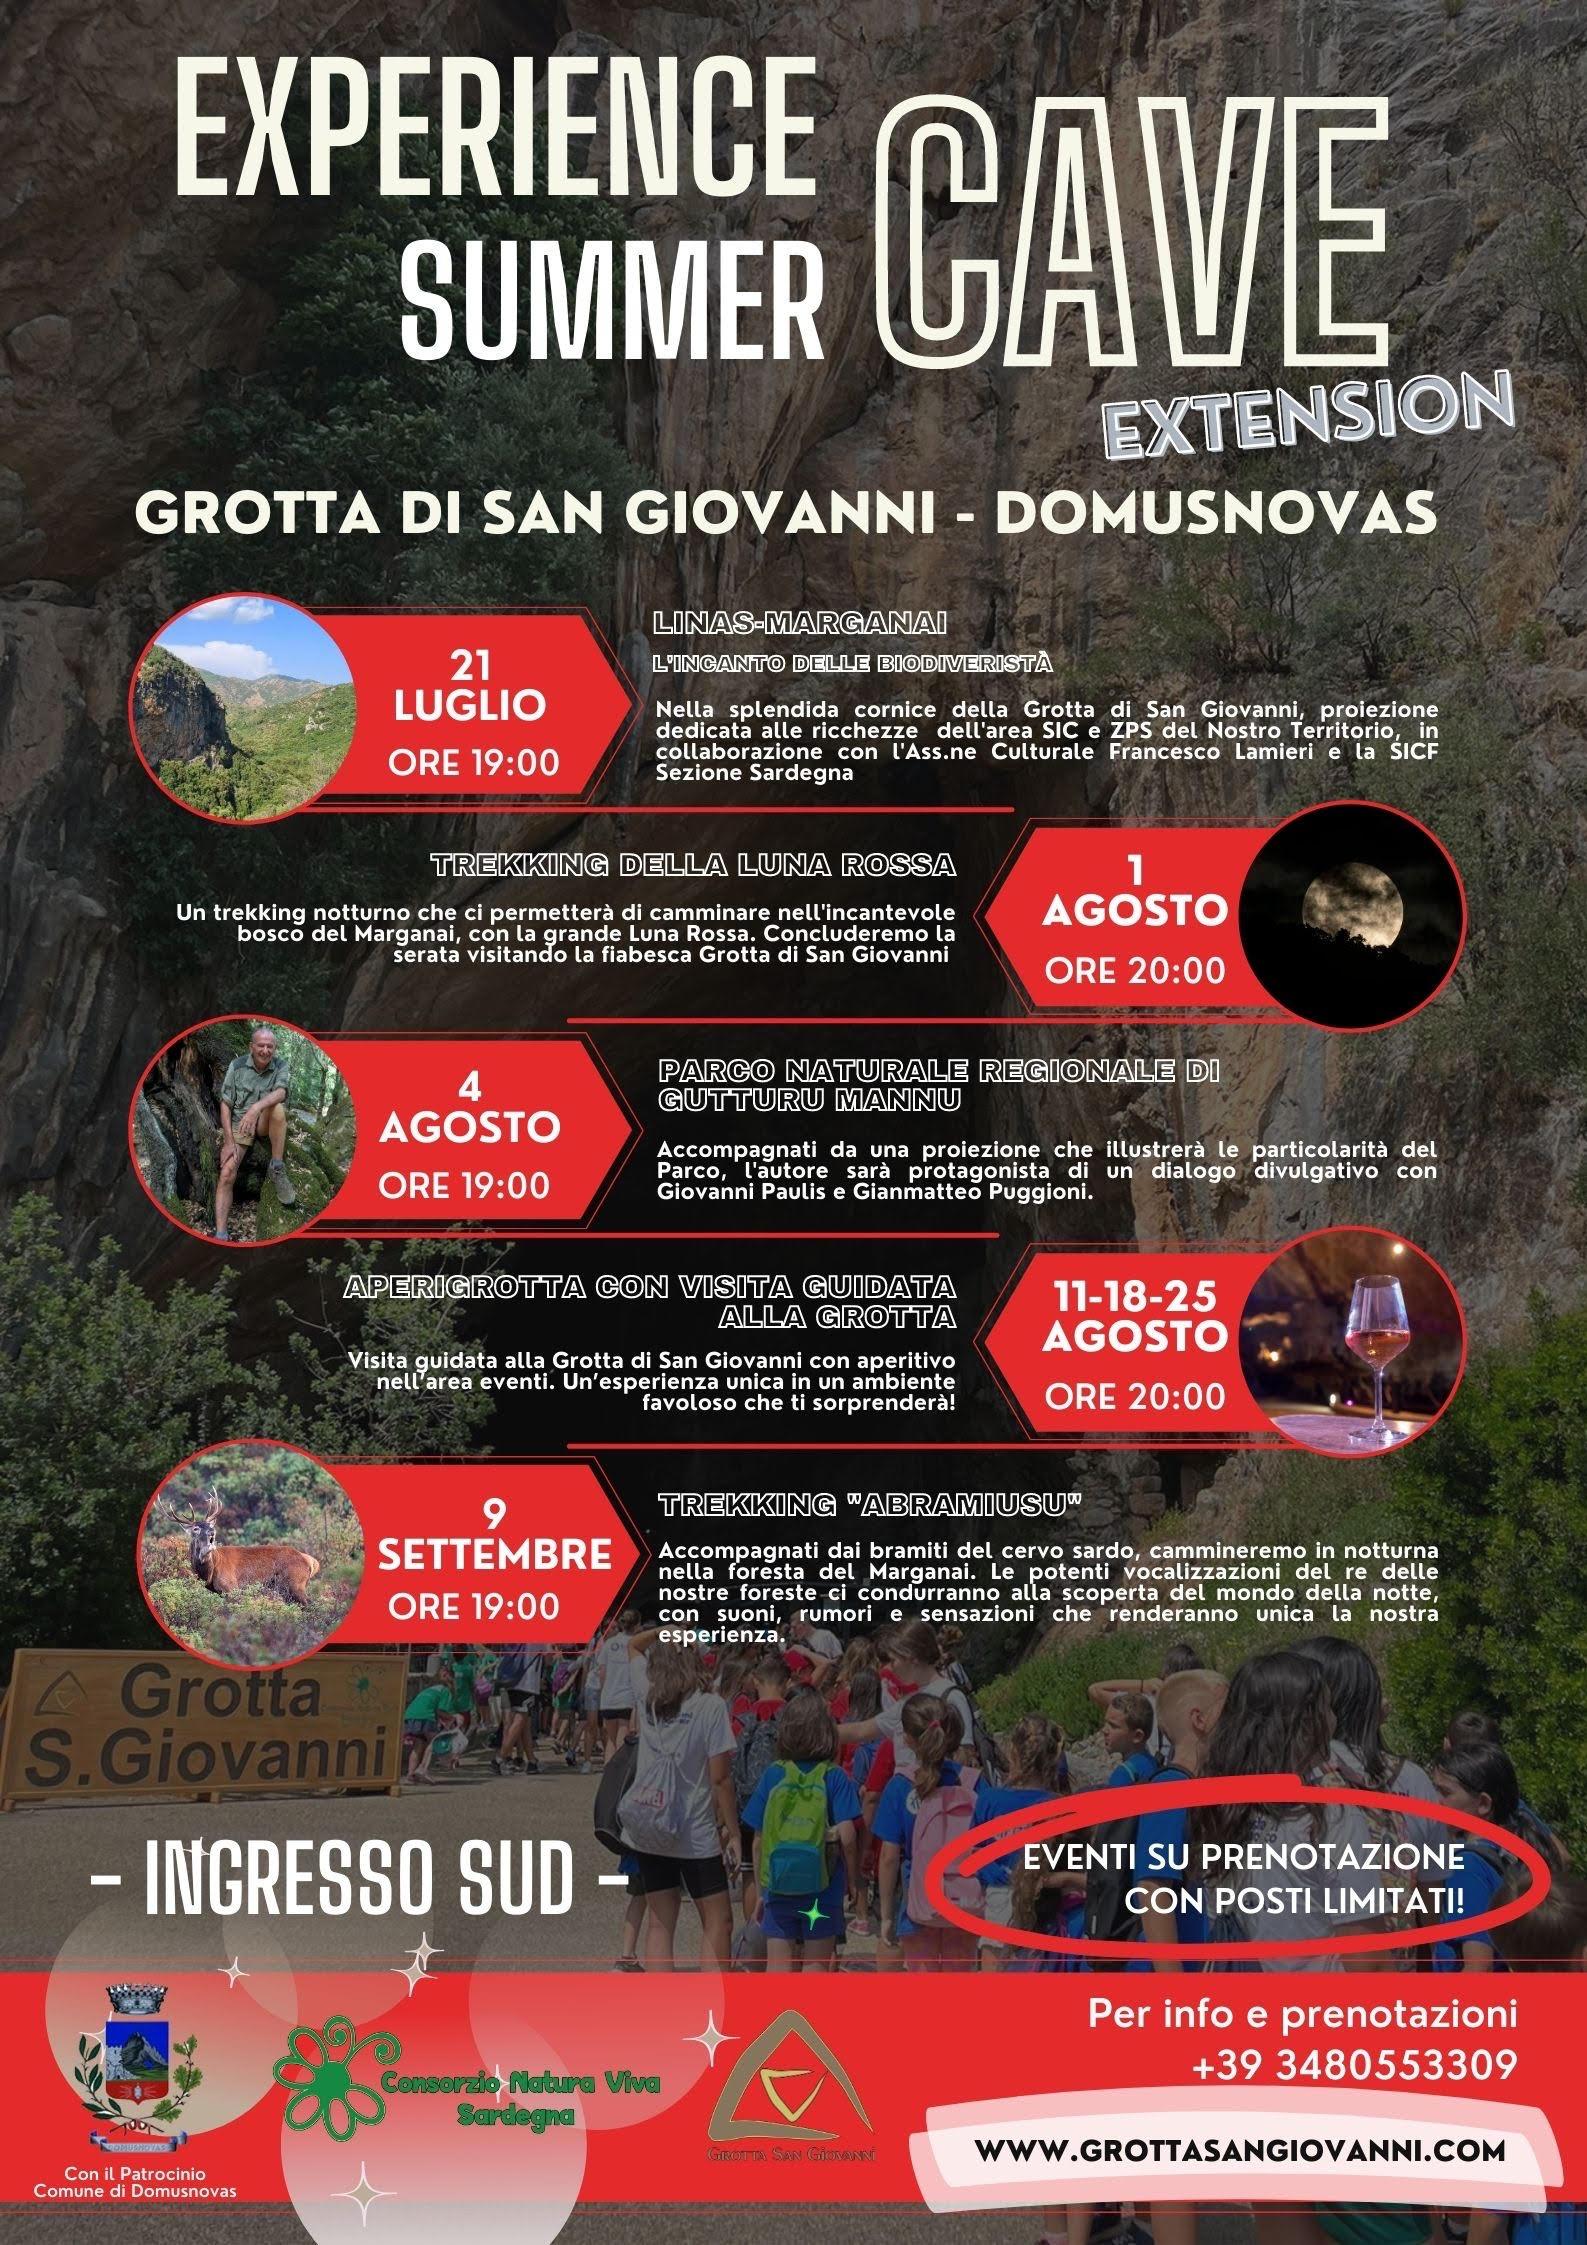 Esperienze uniche alla Grotta di San Giovanni! Eventi su prenotazione, contattateci al 348.0553309